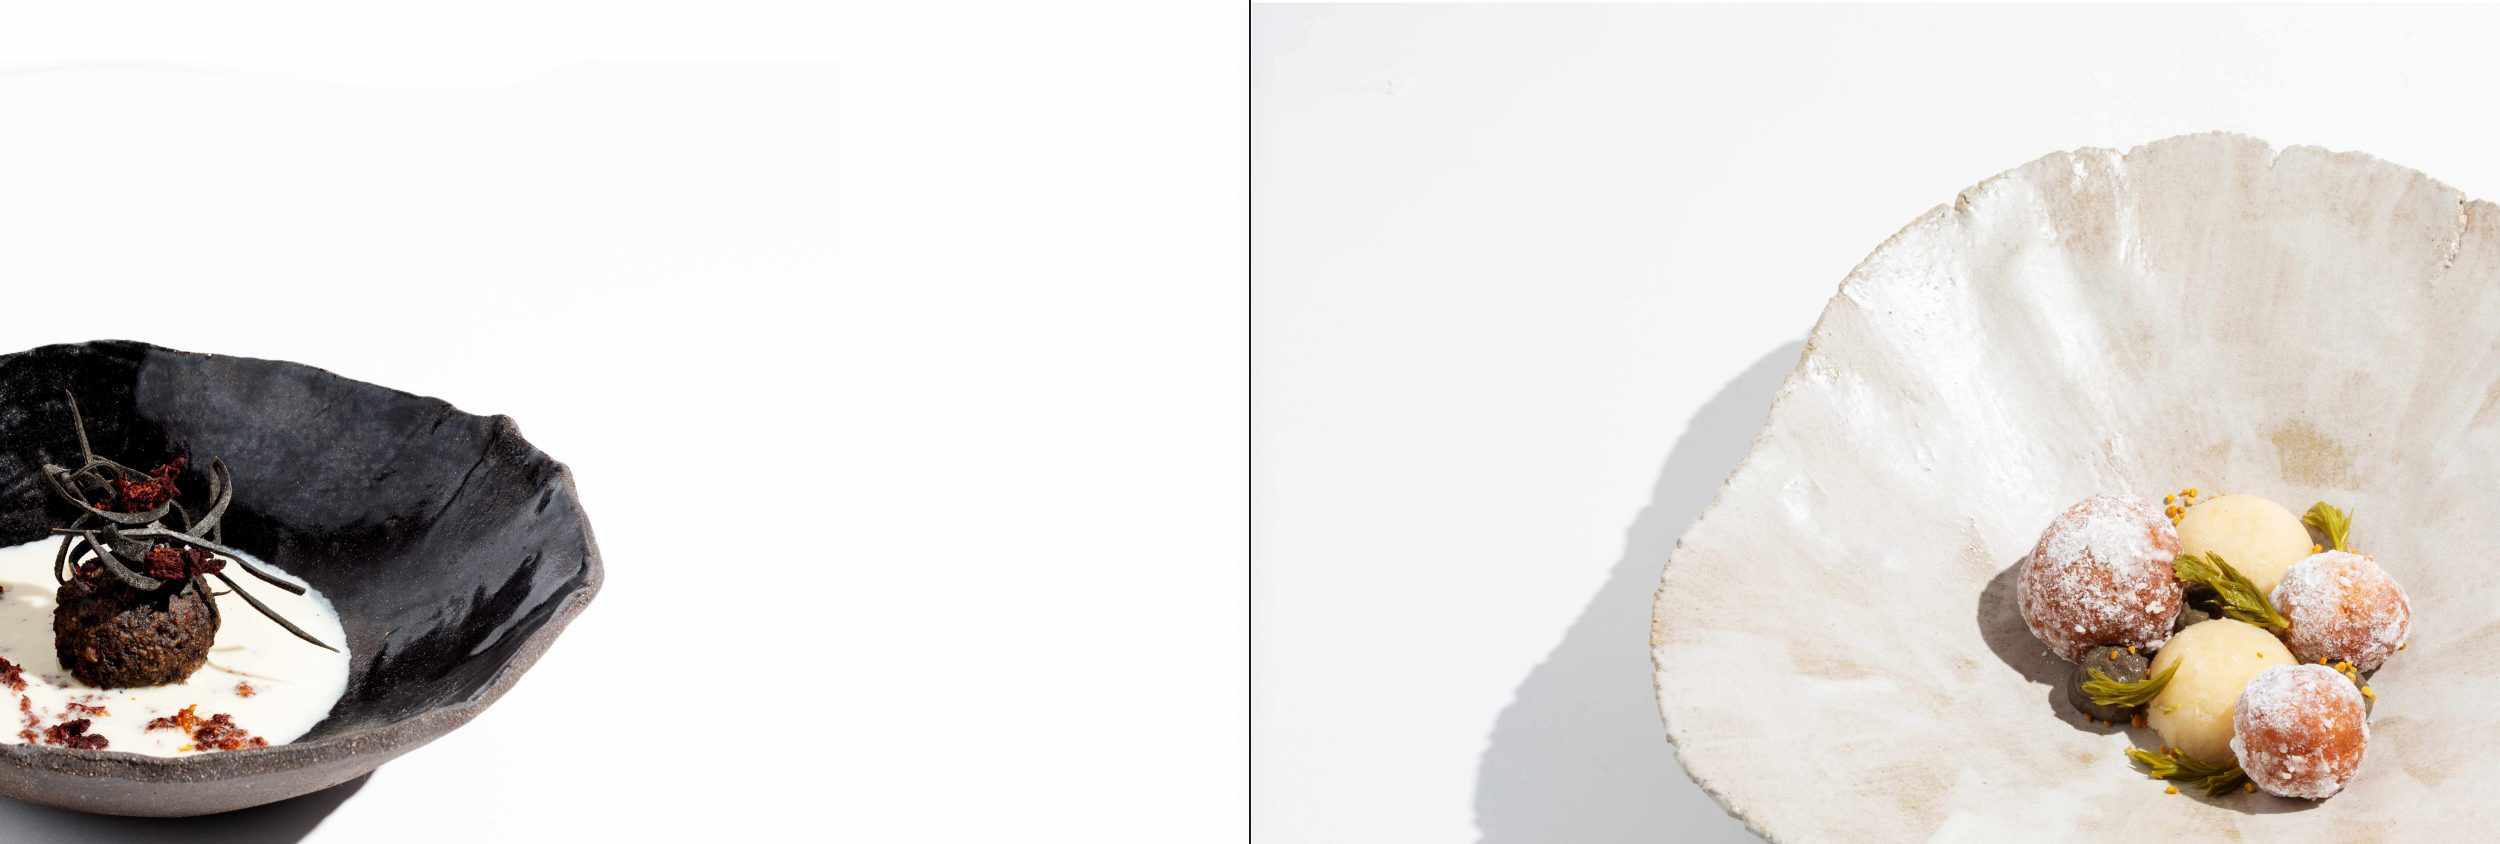 Wilde Sophie, Food& Art Concepts, Jagdschmuck, Jagdmode, Jägerin, Wildkräutersammlerin, Naturpädagogin, Schaftverschneidungen, Wildbretetiketten, Holzbildhauerarbeiten, Wilde Küche, Wild auf Wild, Trophäenschmuck, Privatkoch, Private Fine Dining, Koch für Jagdreisen, Wildbret Etiketten, Jagd T-shirt, Jägershirts, Unikate, female chef, huntress, Jagdreise